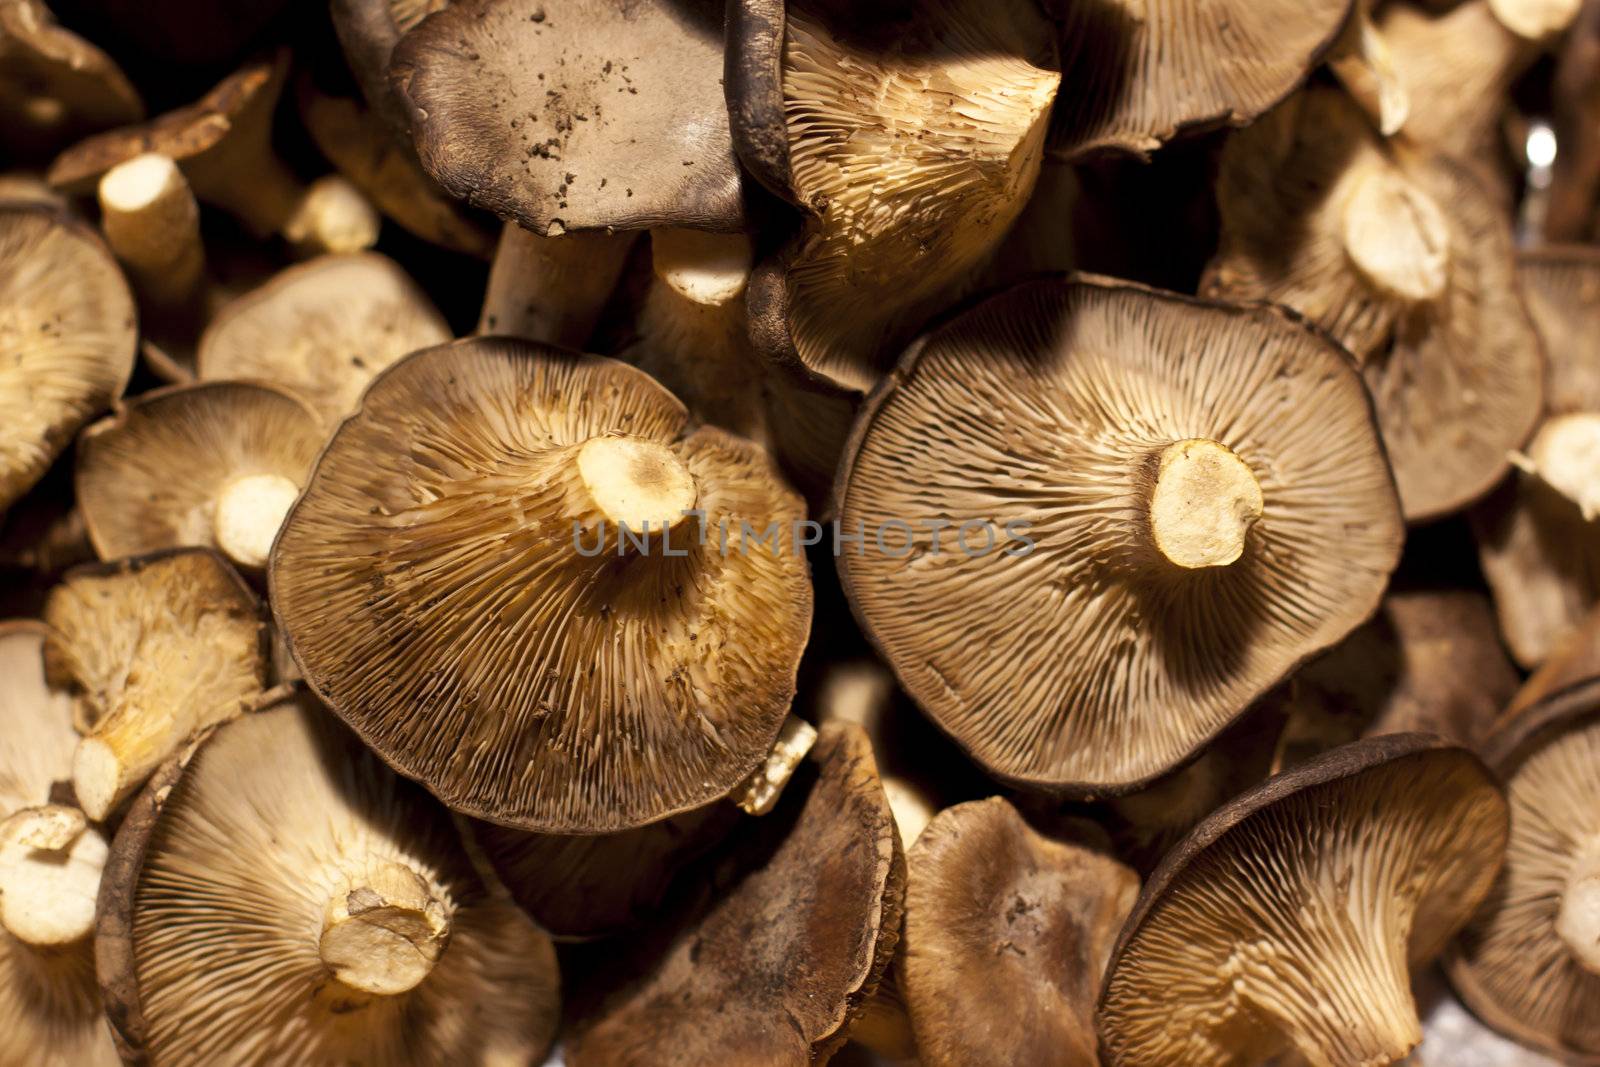 Eatable mushrooms by kasto